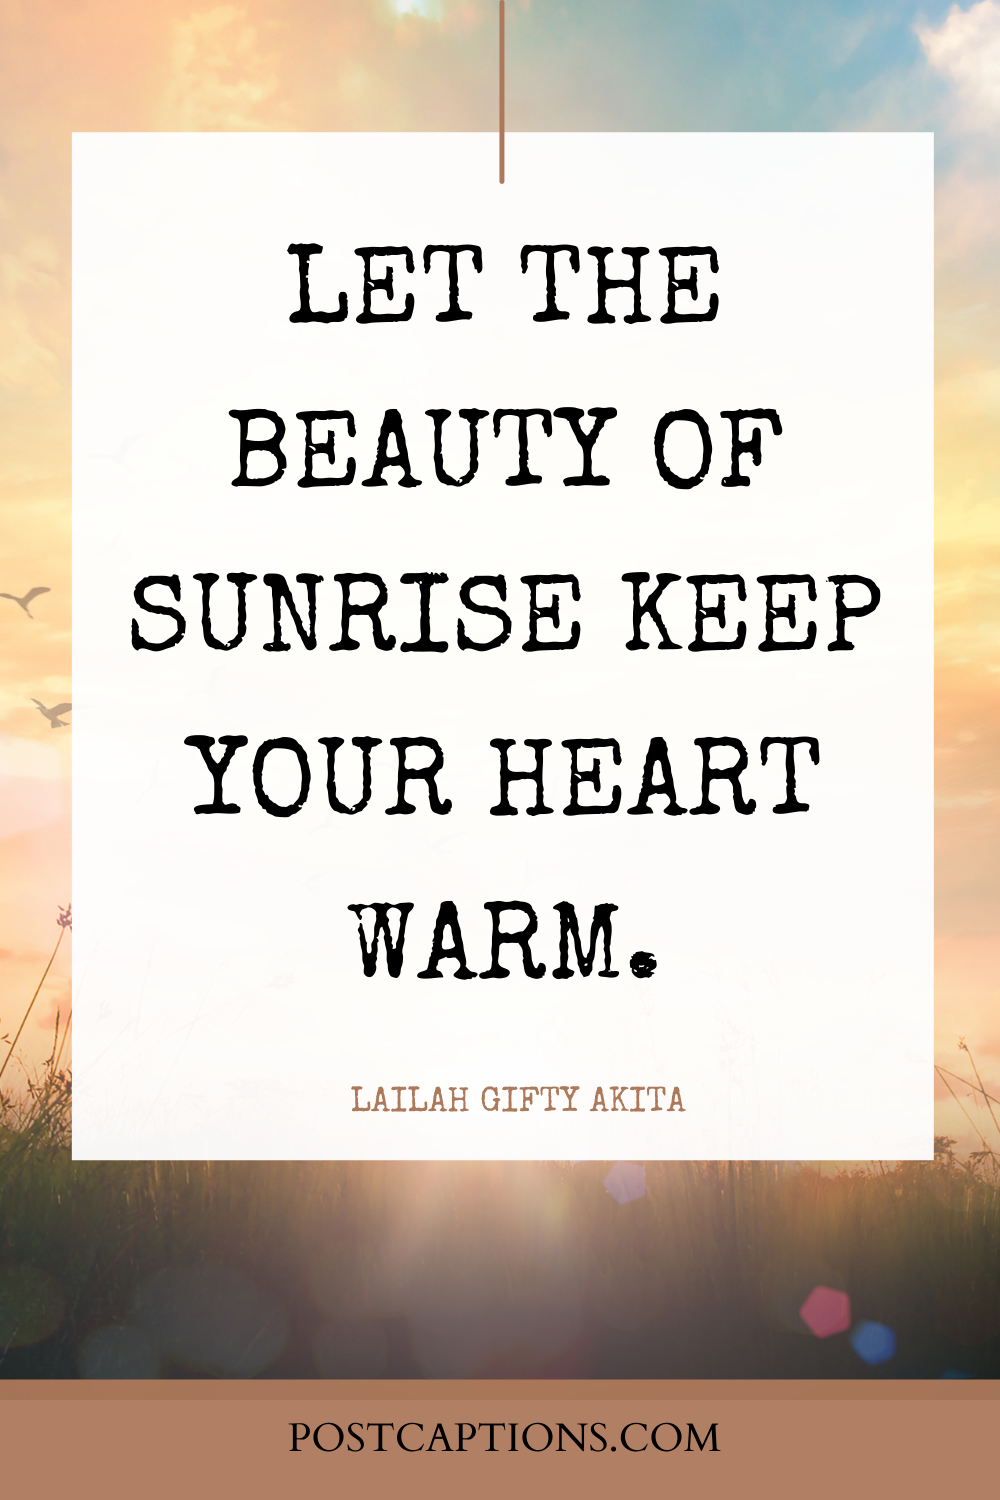 Sunrise quotes for Instagram